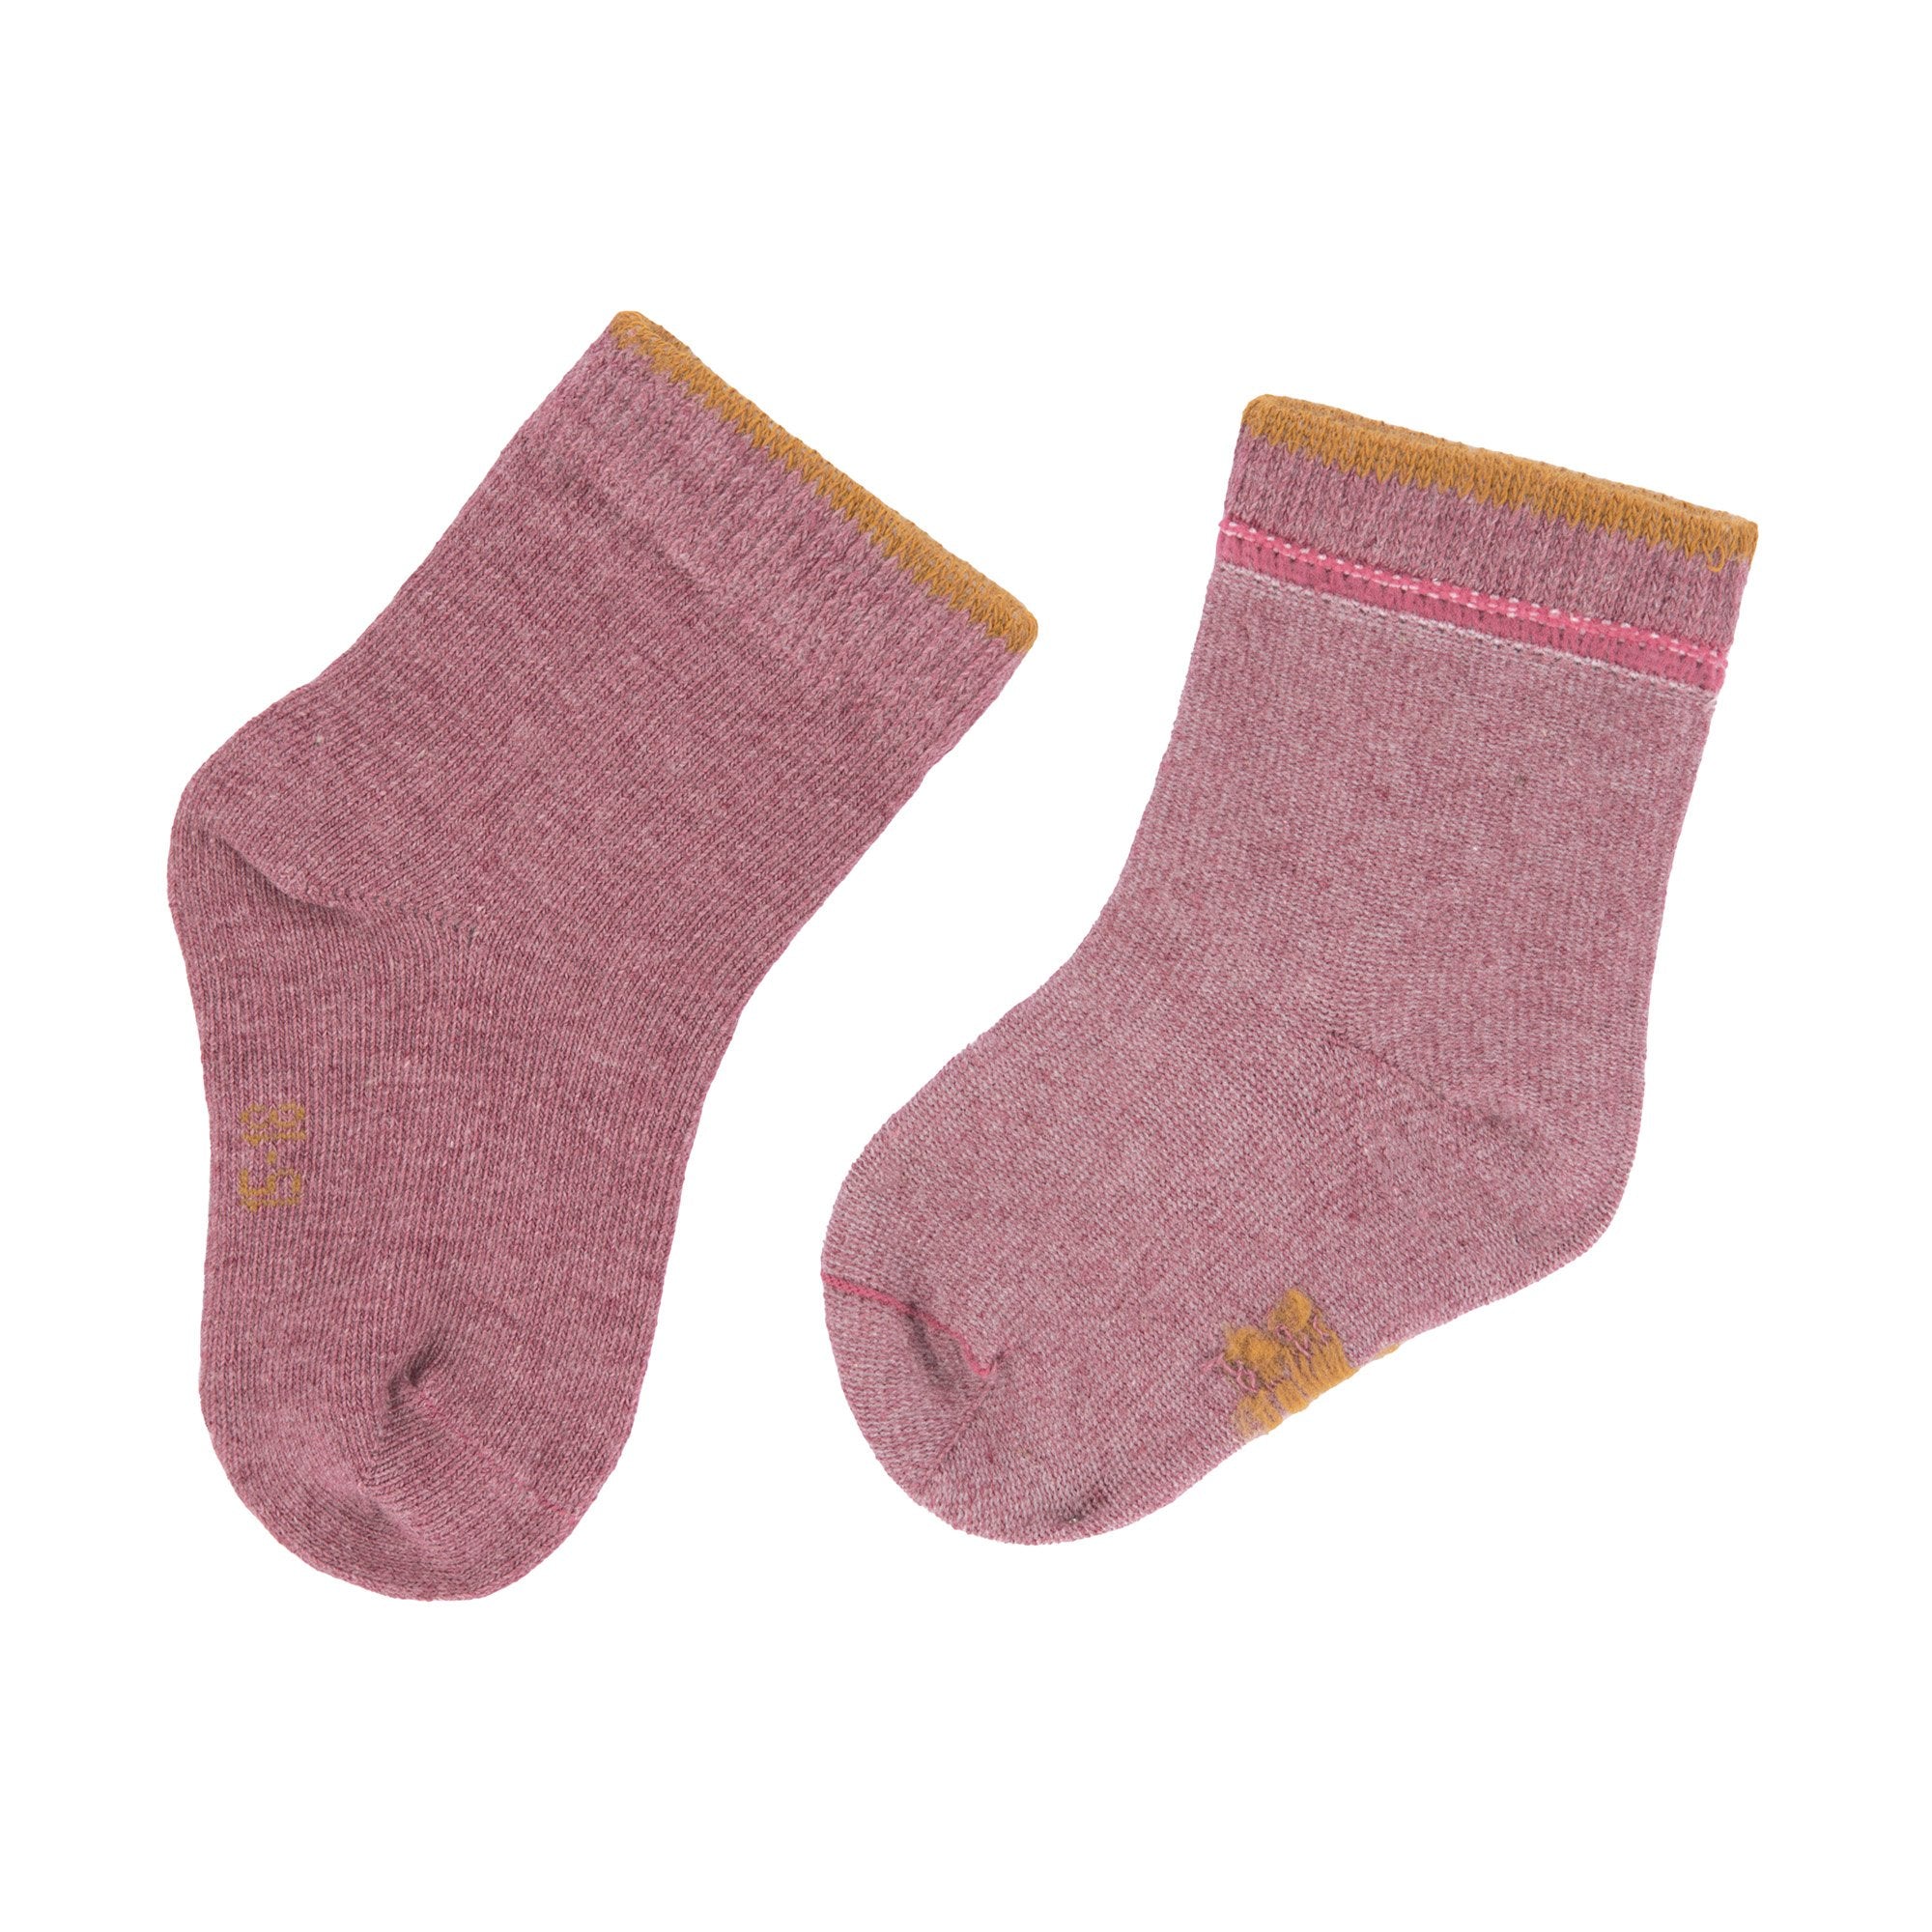 Kinder-Socken (3er-Pack) aus Bio-Baumwolle GOTS - "Rosewood"